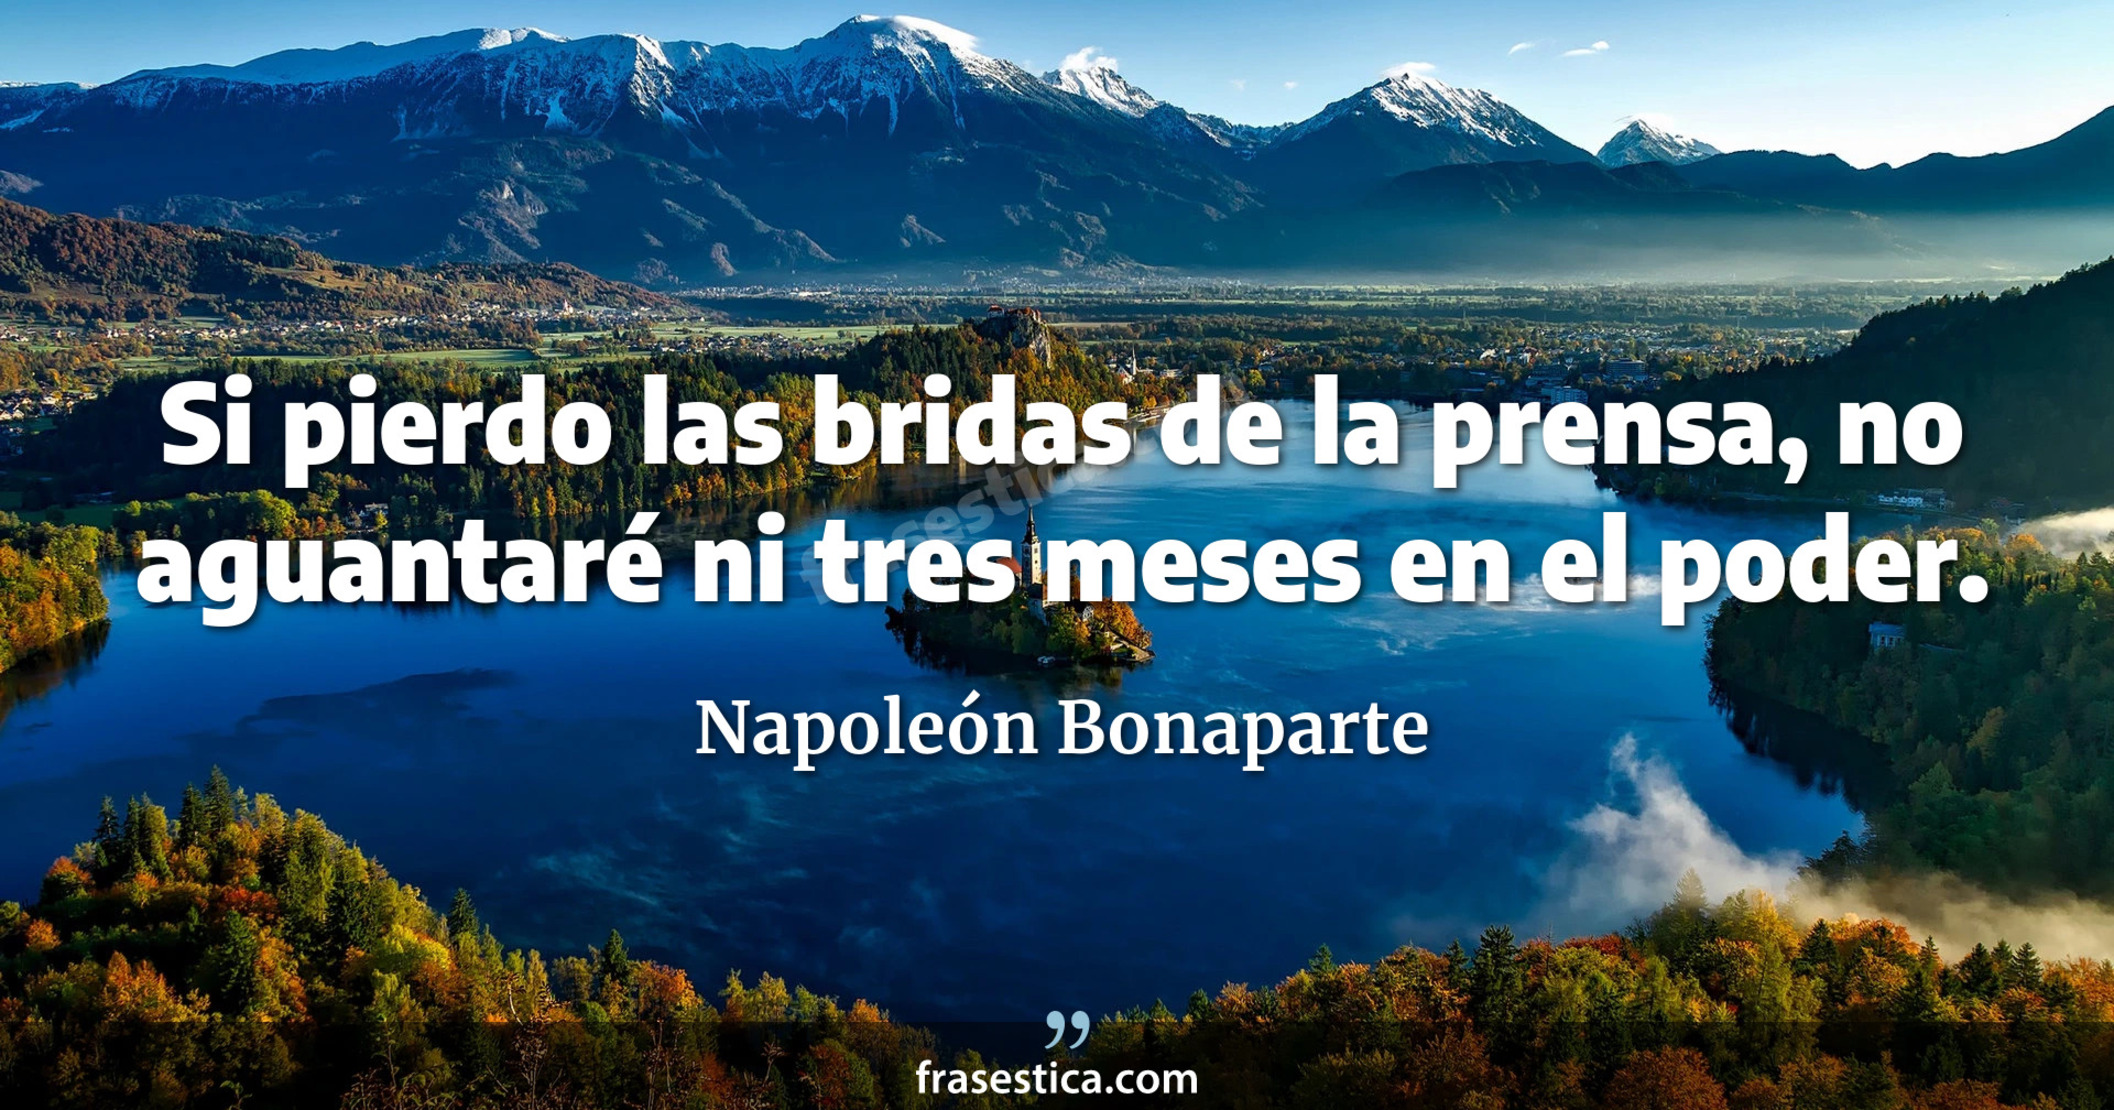 Si pierdo las bridas de la prensa, no aguantaré ni tres meses en el poder. - Napoleón Bonaparte